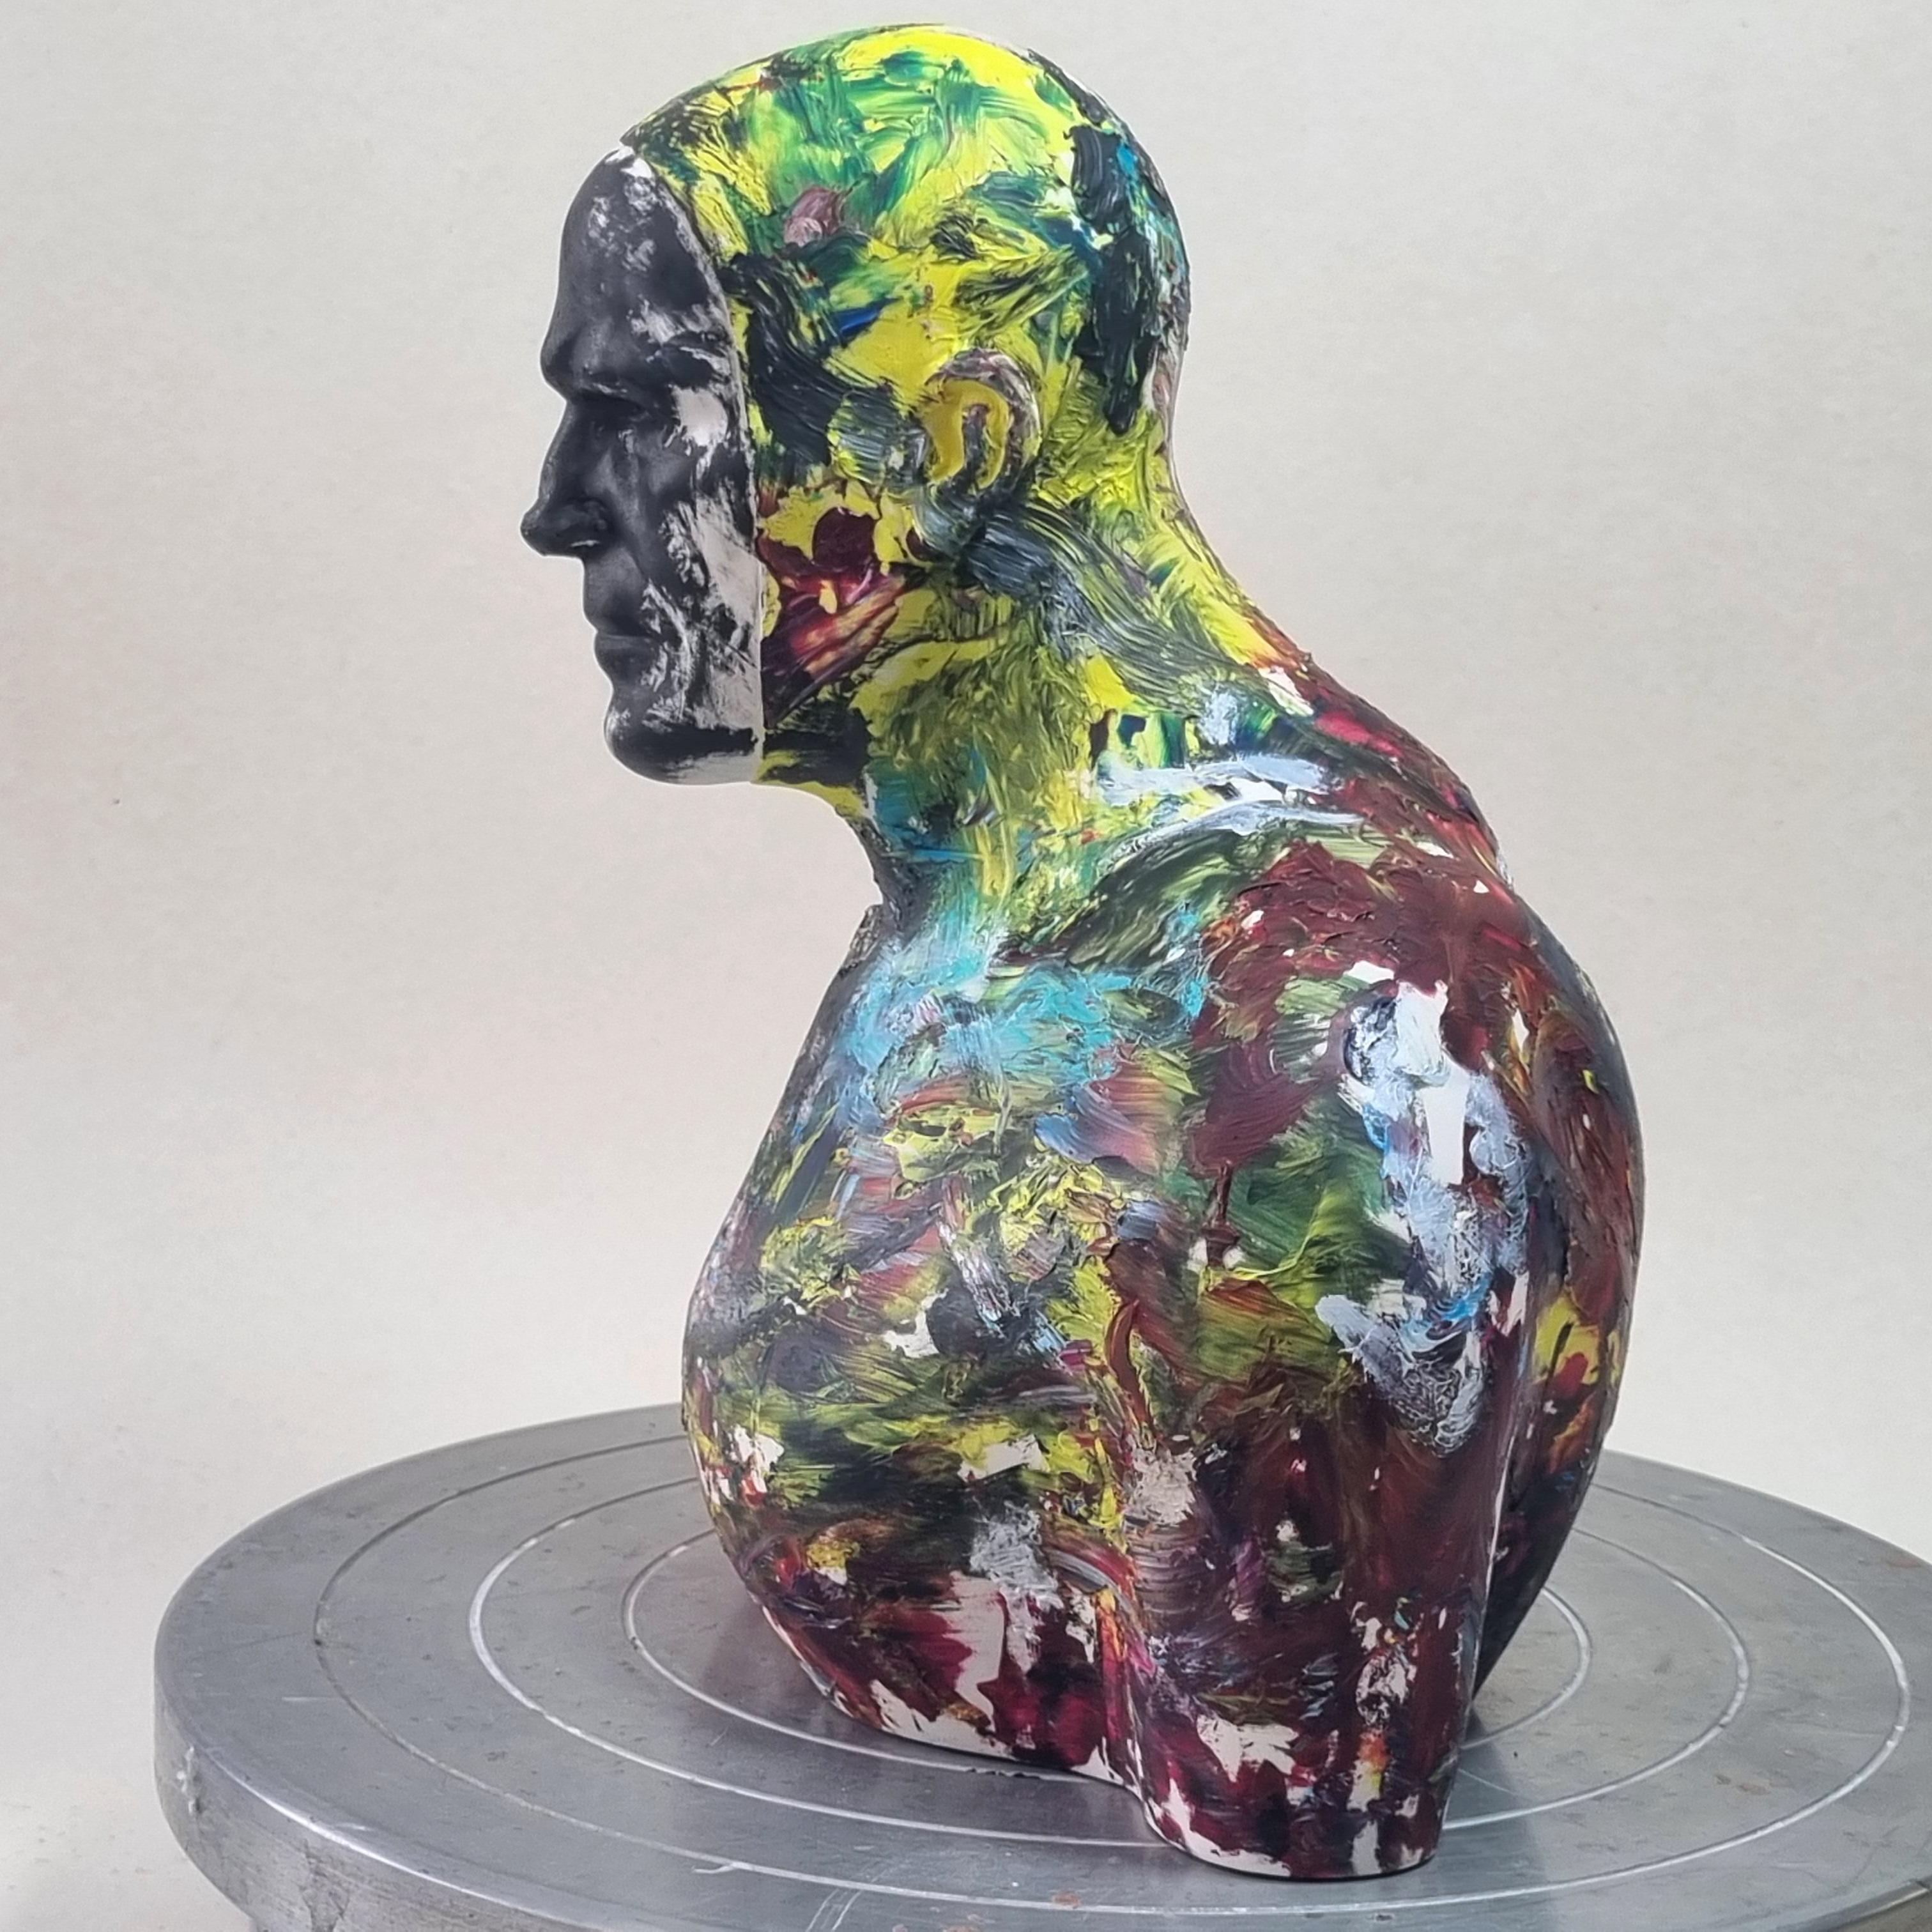 Die Skulptur wurde von der Künstlerin mit Acrylic One (einer Acrylgießharzverbindung) geschaffen und geformt. Der Künstler bemalte diese Skulptur dann ausdrucksstark mit Ölfarbe

Tomasz Bielak wurde 1967 in Lublin geboren. Er absolvierte  der